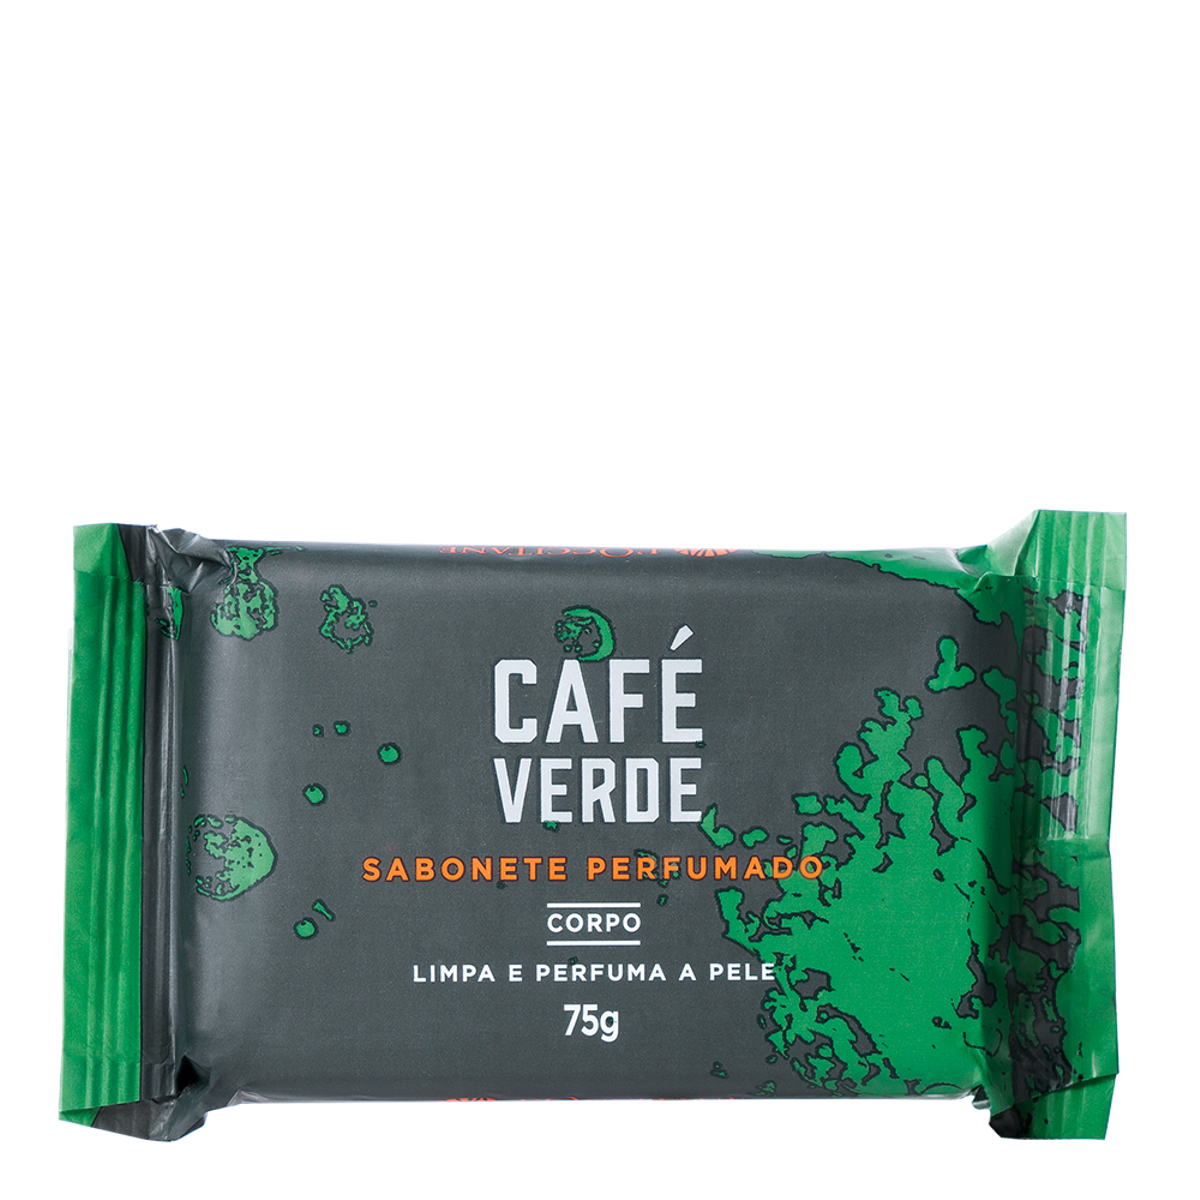 Sabonete Perfumado Café Verde, ,  large